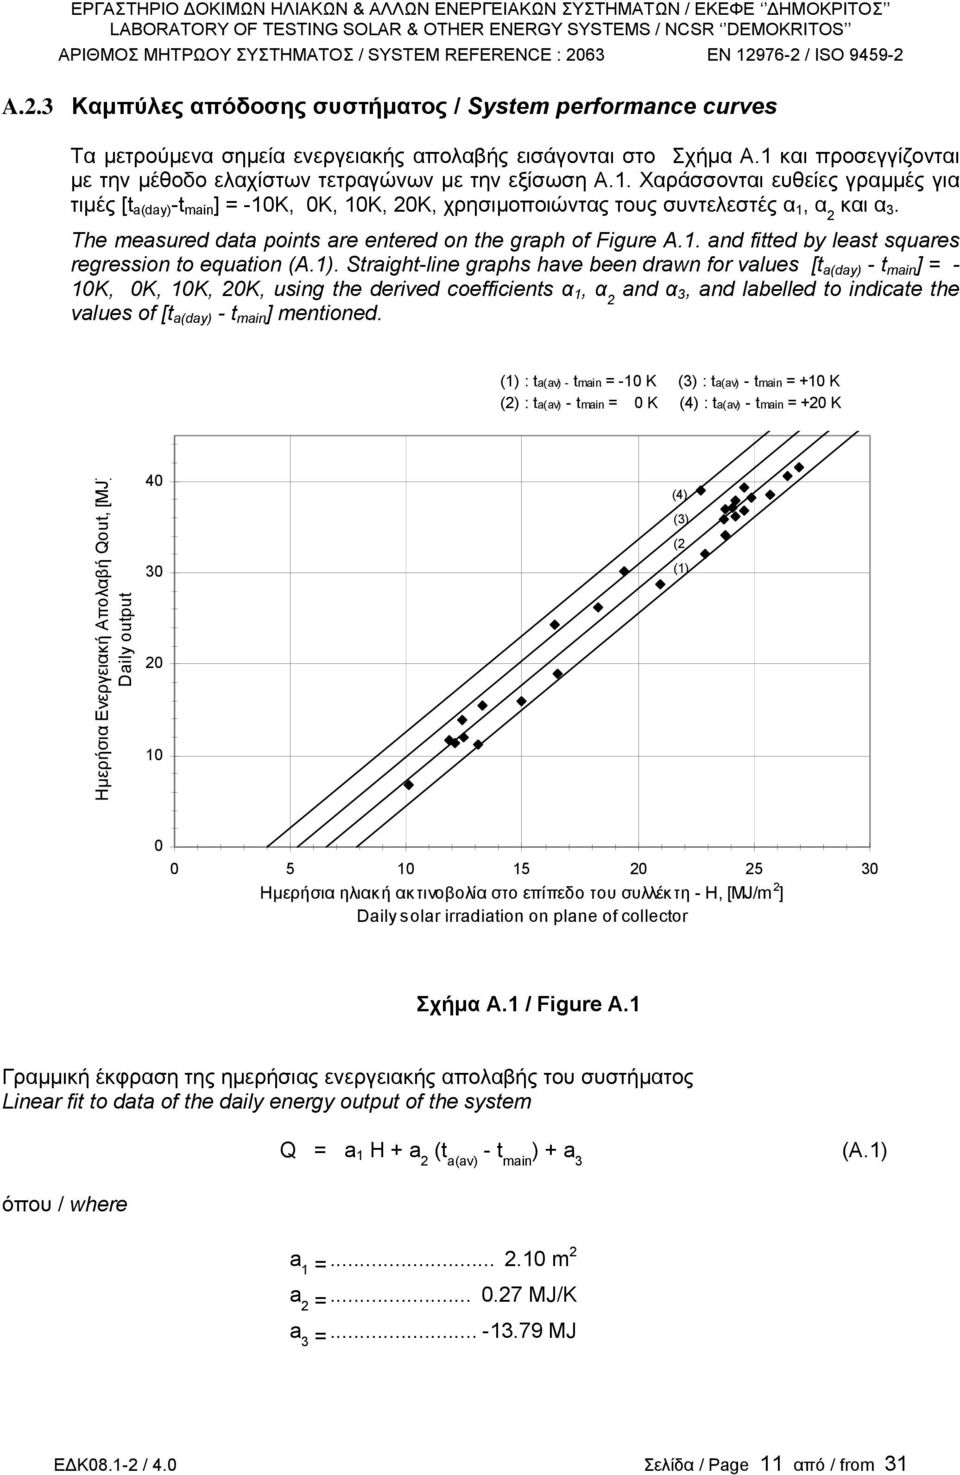 Τhe measured data points are entered on the graph of Figure A.1. and fitted by least squares regression to equation (A.1).